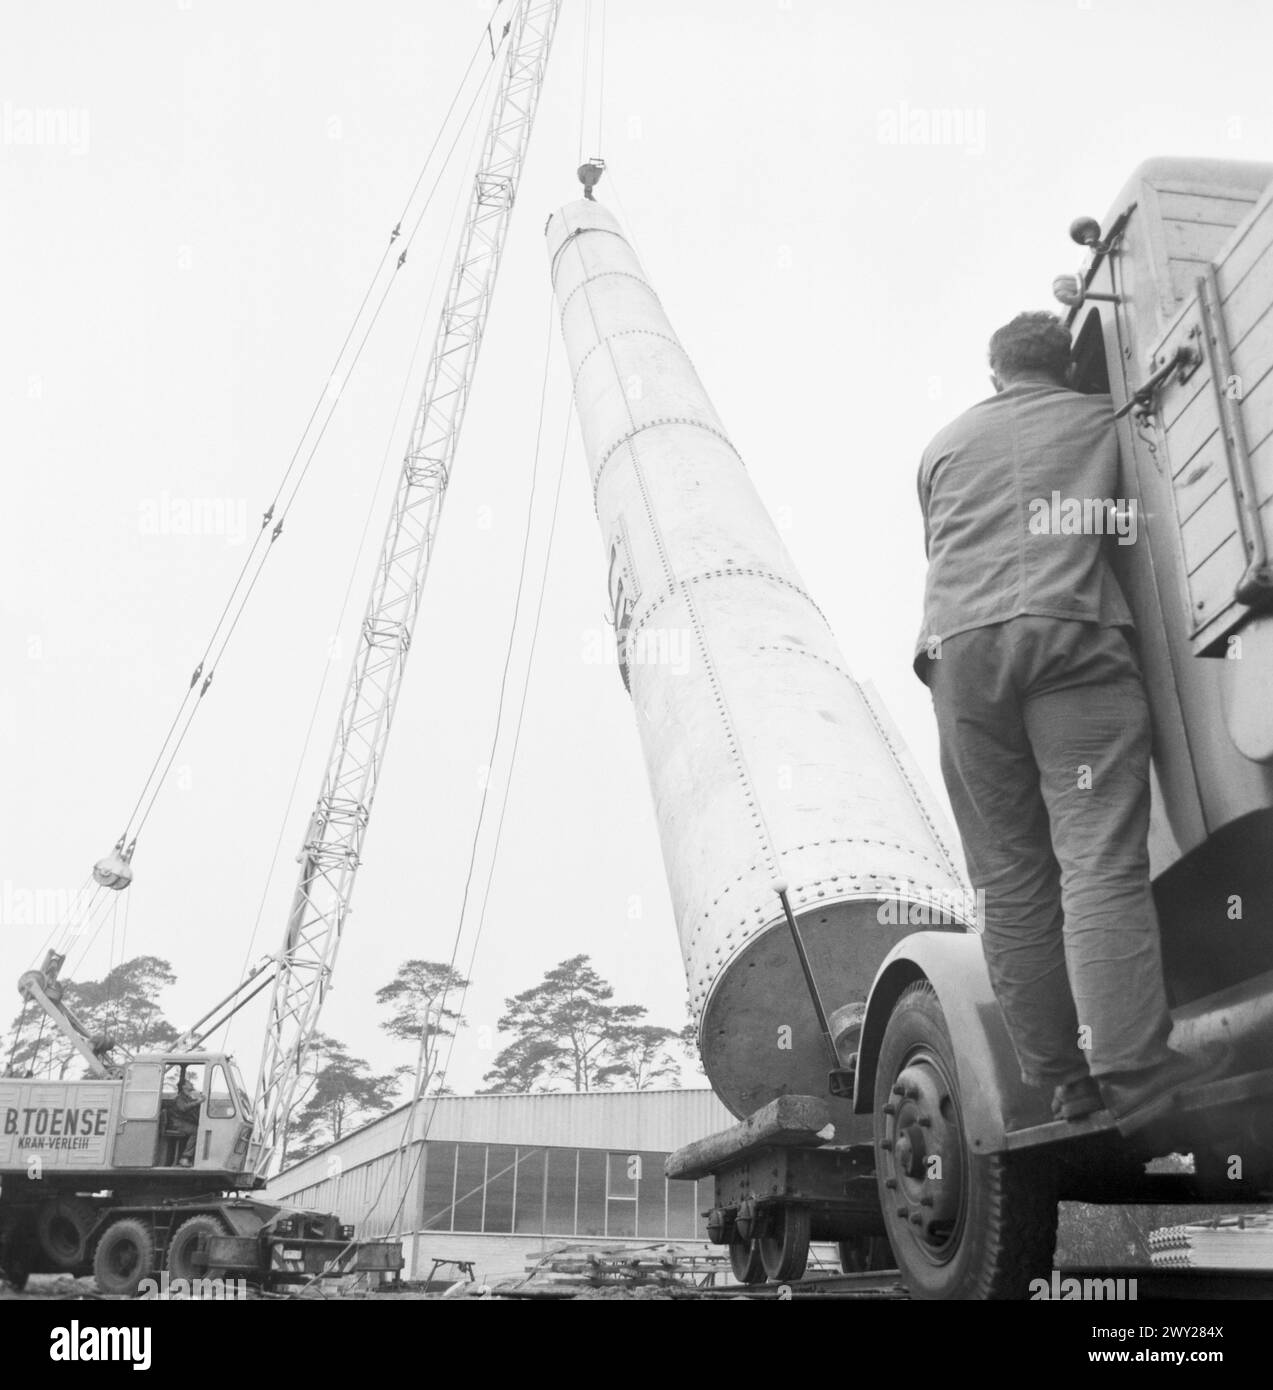 DAS erste Teilstük (26m) eines riesigen Stahlmasts (230m) wird montiert, der die Sendefähigkeit des SFB über Mitteldeutschland hinaus ermöglichen soll. Berlin 1962. Banque D'Images